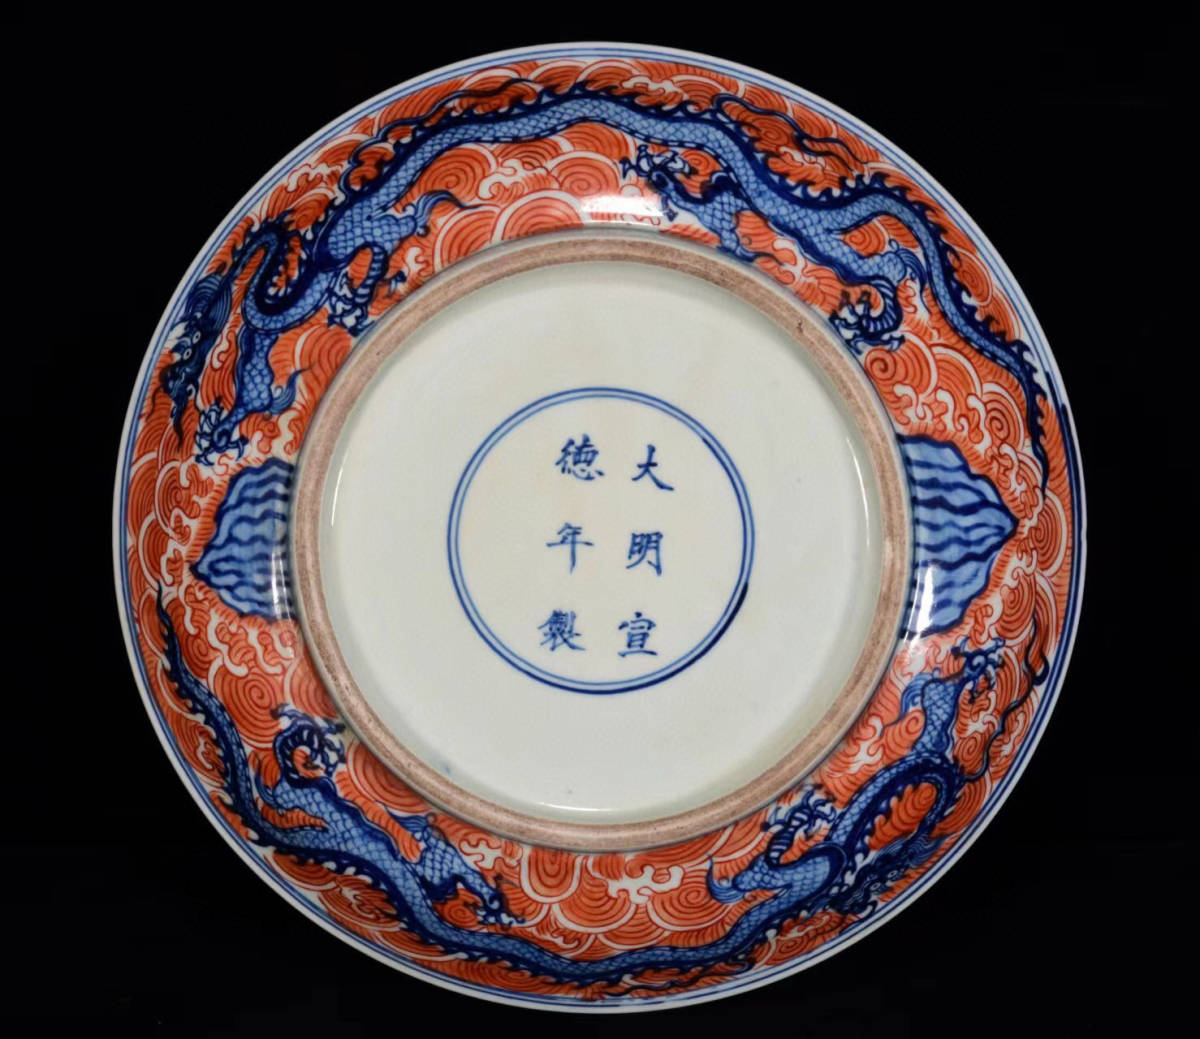 ▽鴻▽ 明 宣德年製款 古陶瓷品 青花 礬紅 龍紋 供盤 置物 古賞物 中国